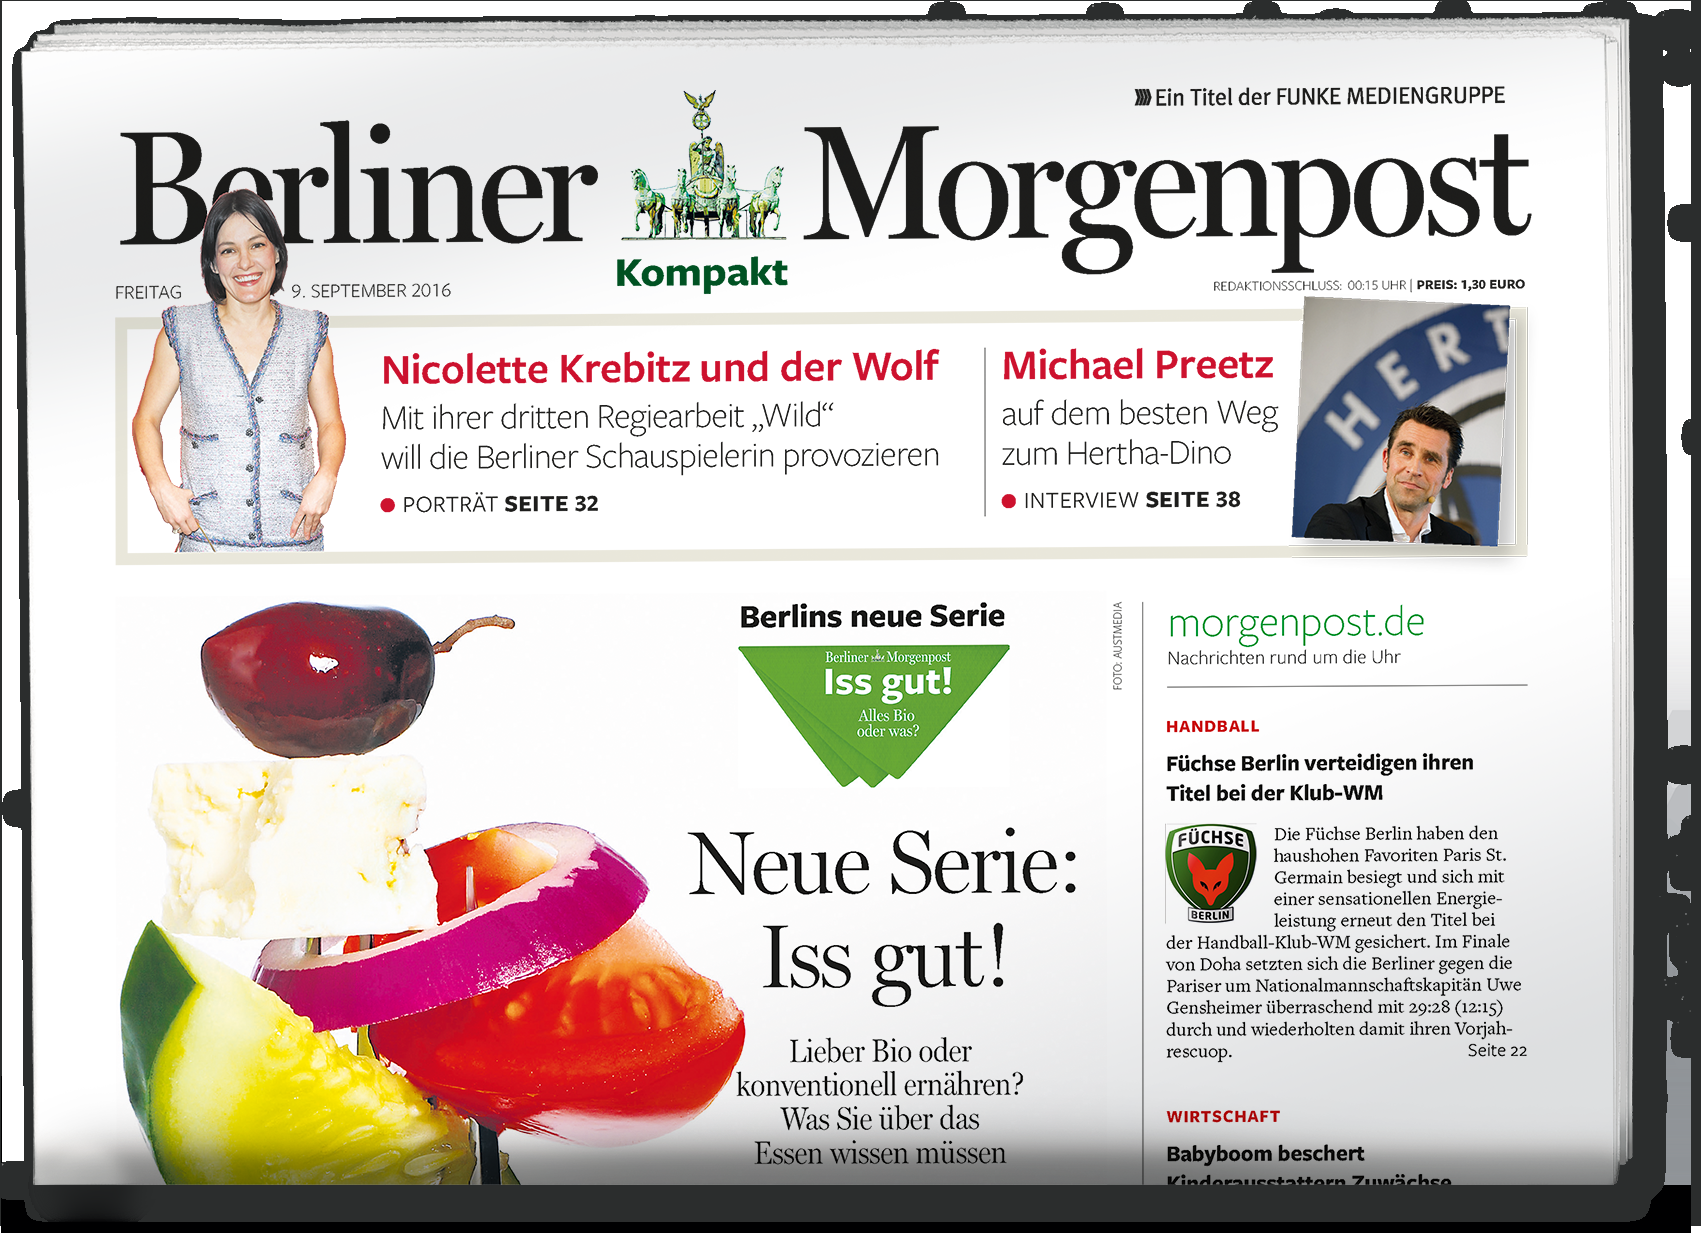 Quellen: 1 Marken-Nettoreichweite der Berliner Morgenpost.